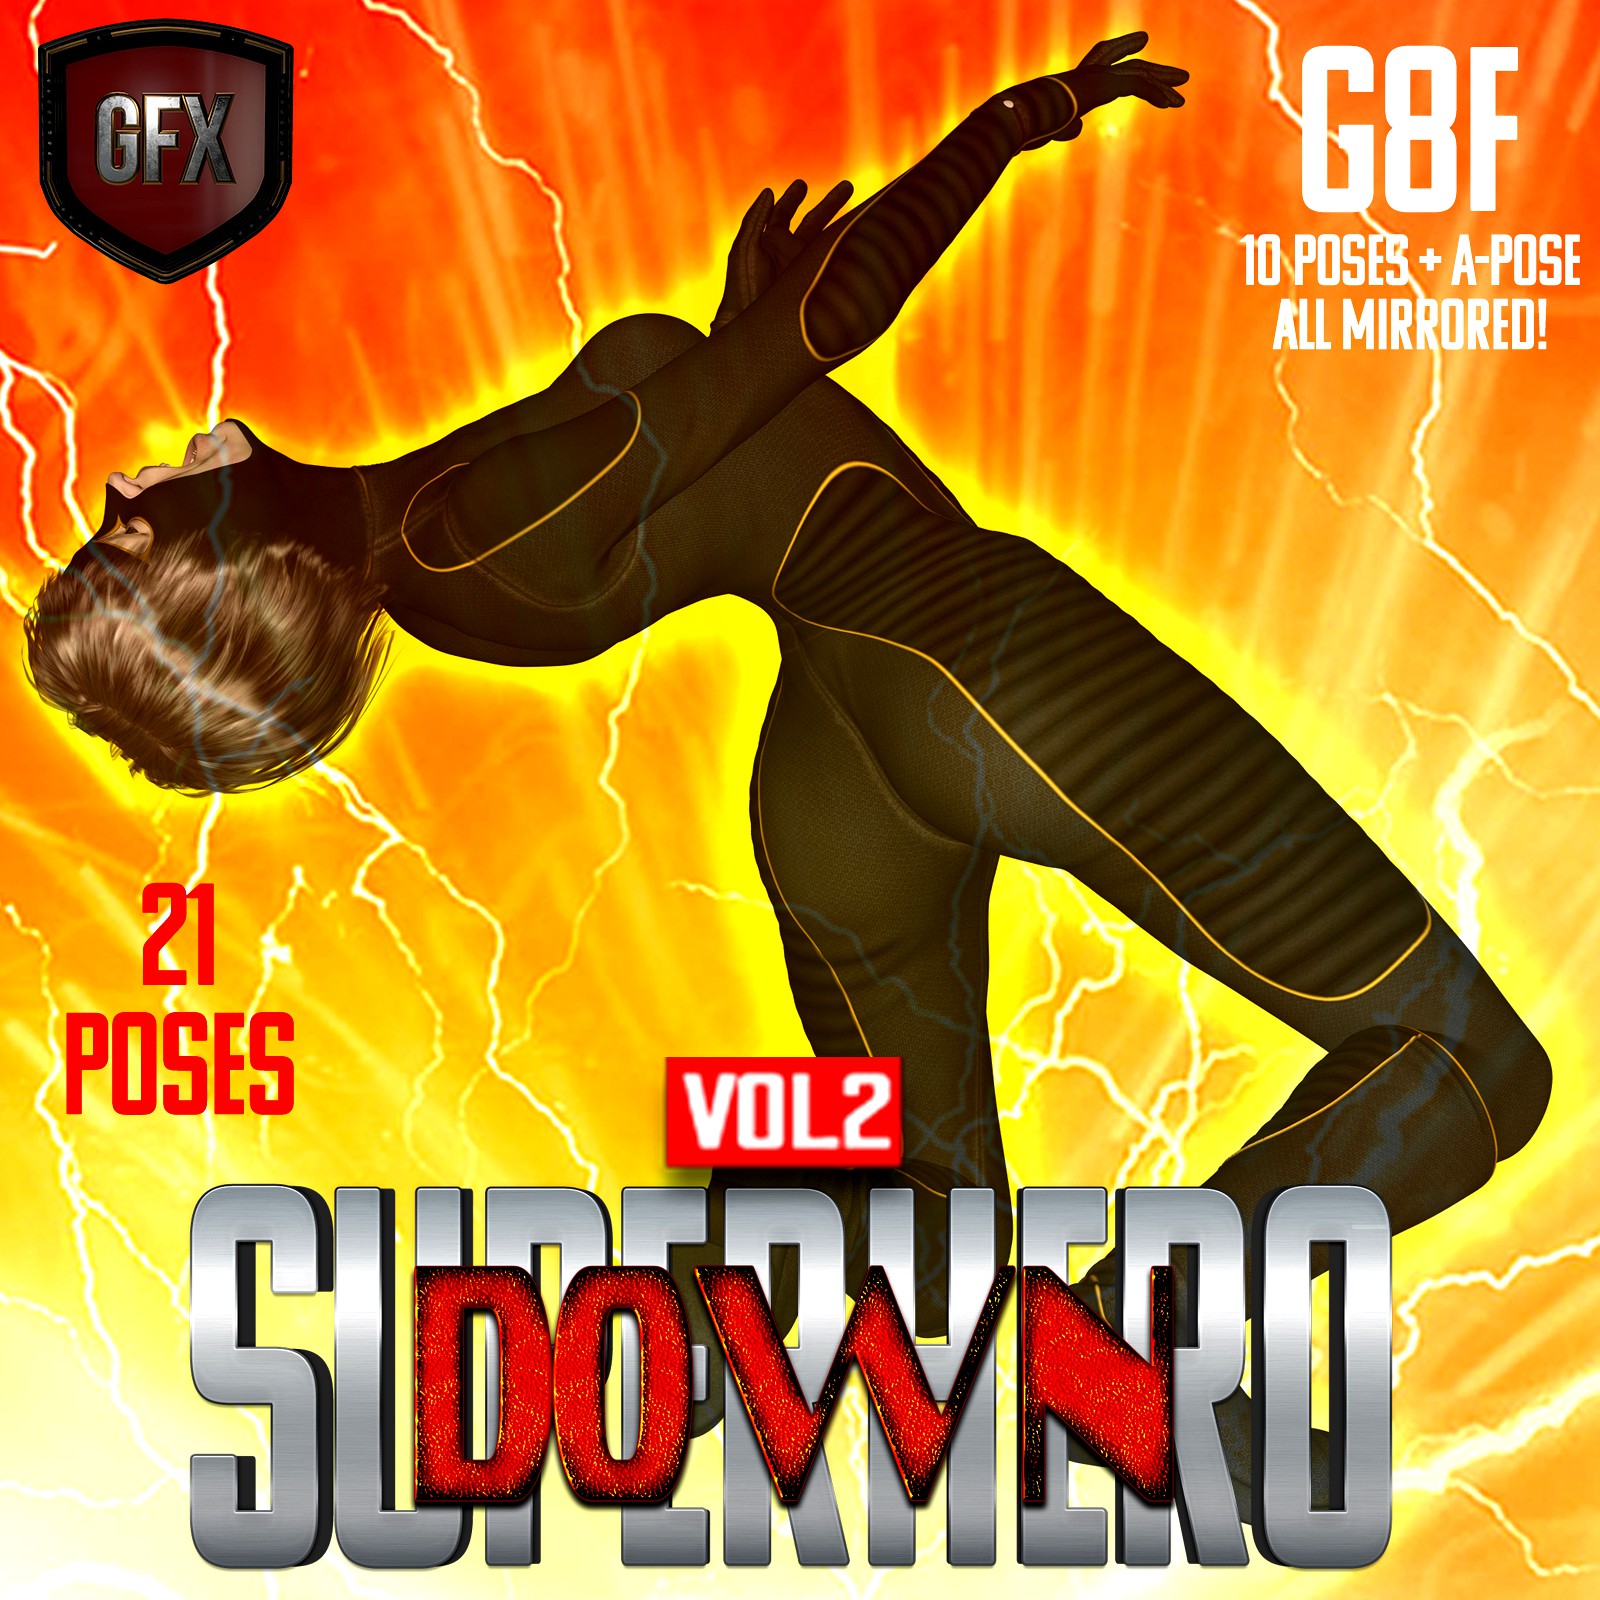 SuperHero Down for G8F Volume 2